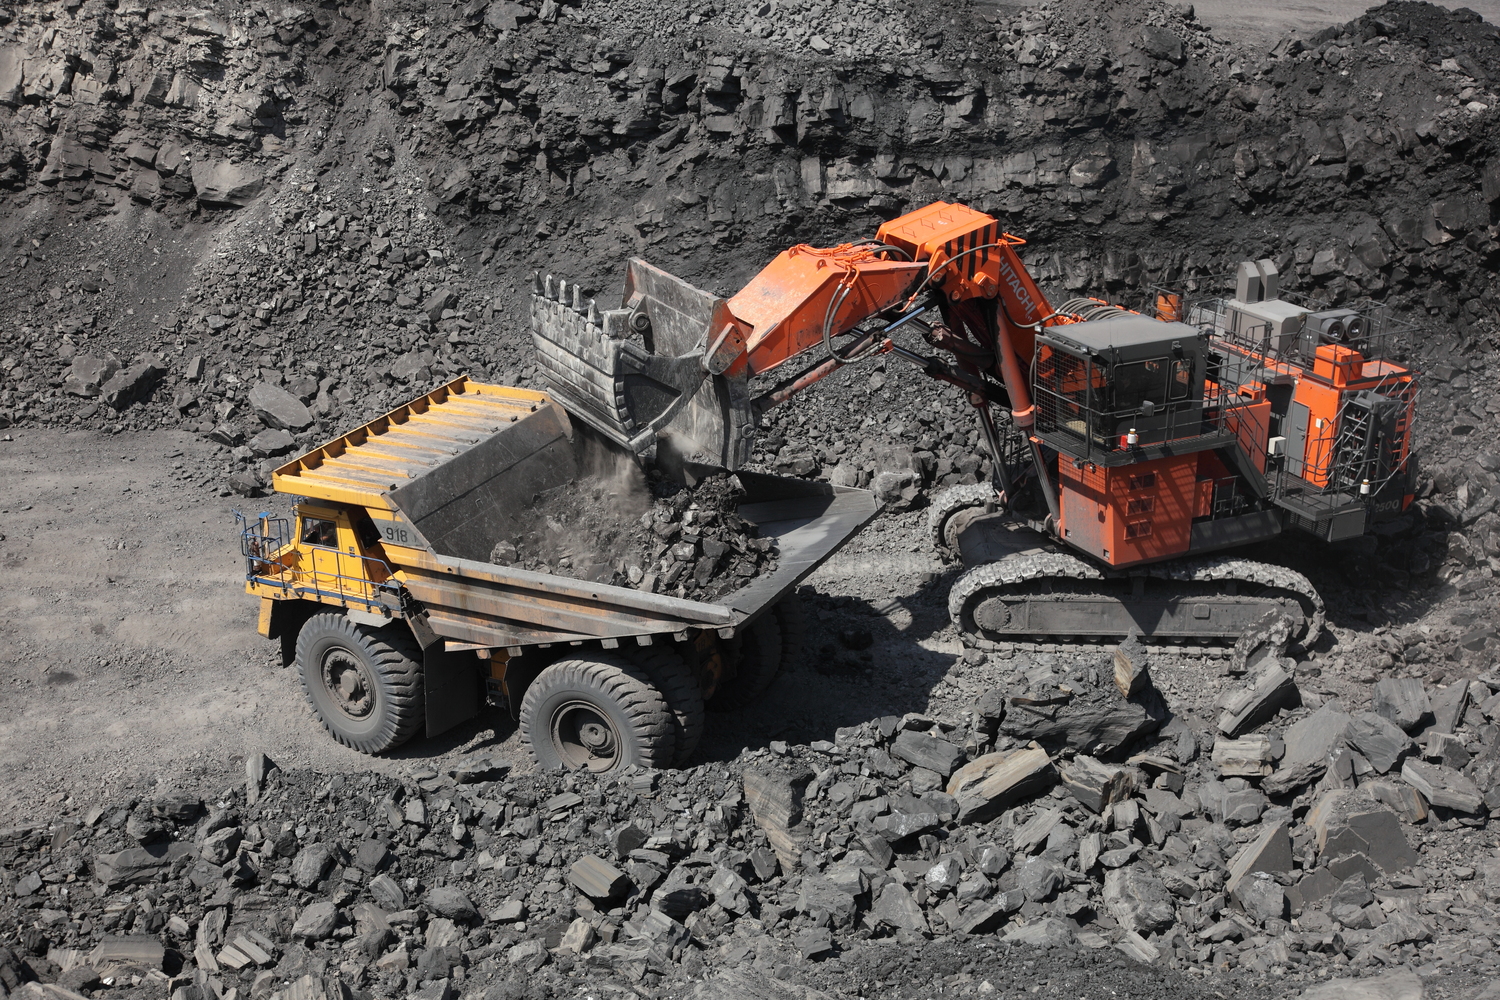 9 млн тонн угля добыли с начала 2022 года горняки АО Стройсервис. Стройсервис